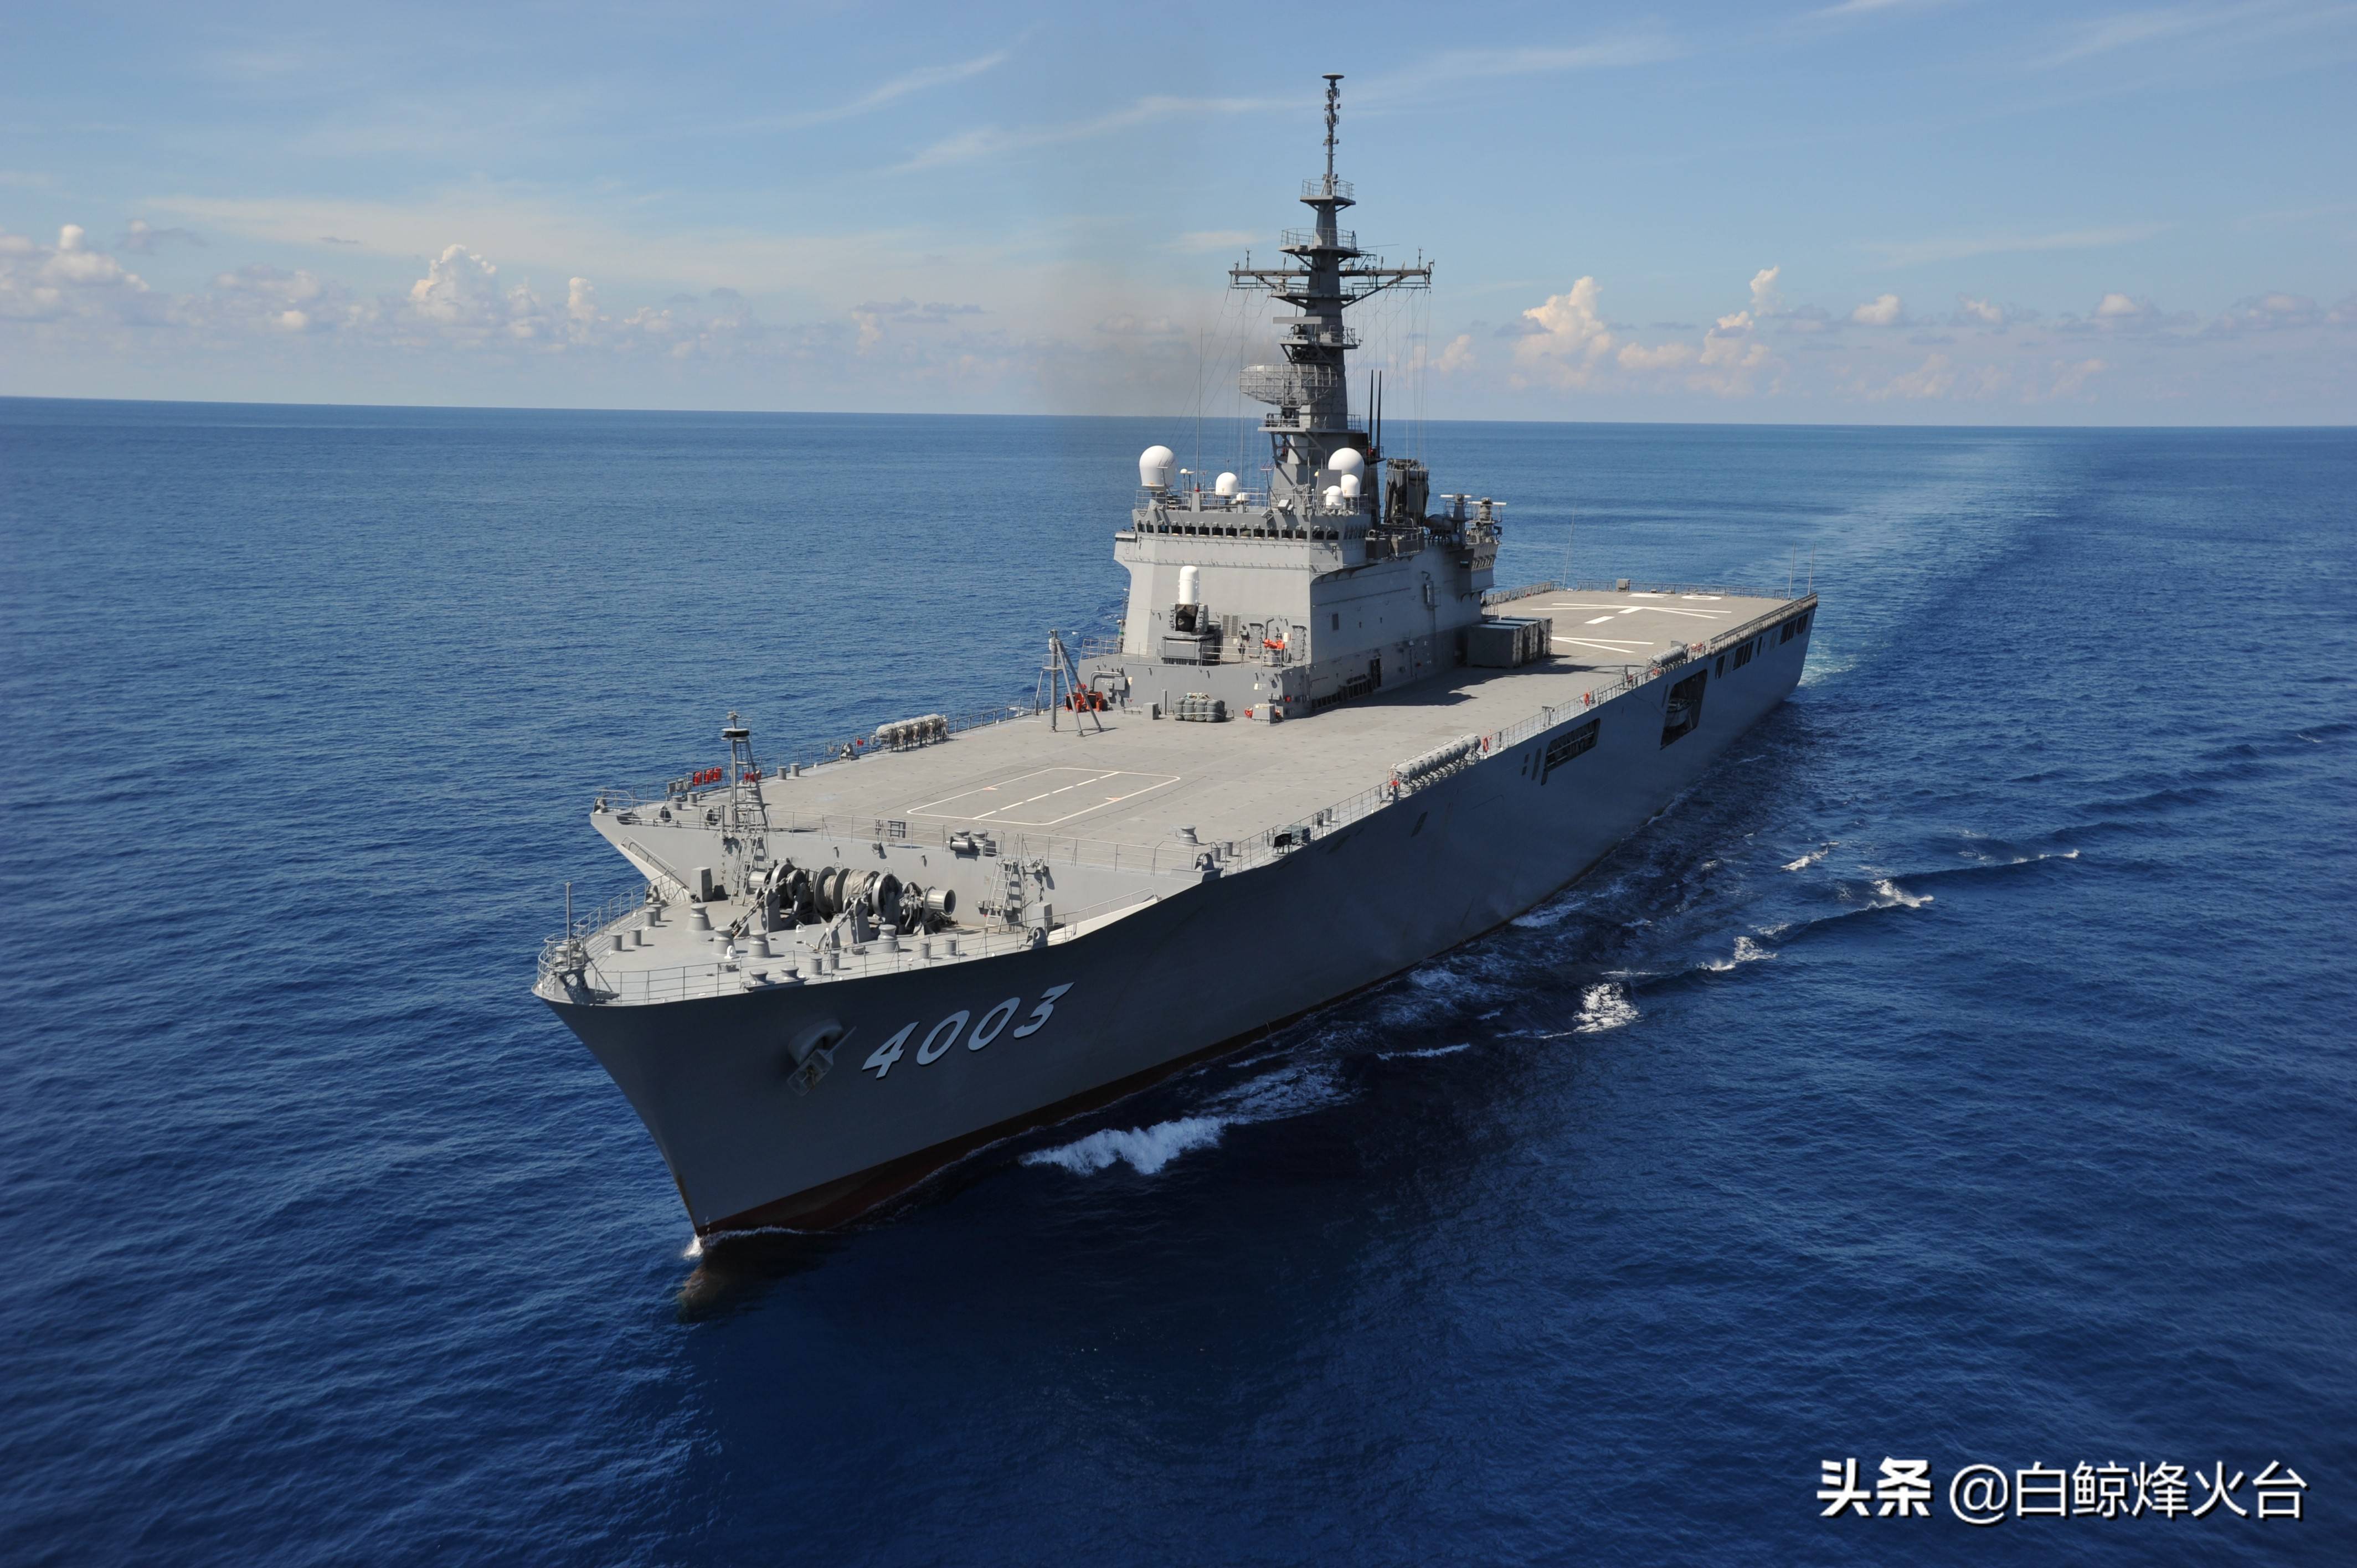 12 日本海上自卫队有三种型号的直通甲板舰艇,分别是"大隅"级登陆舰